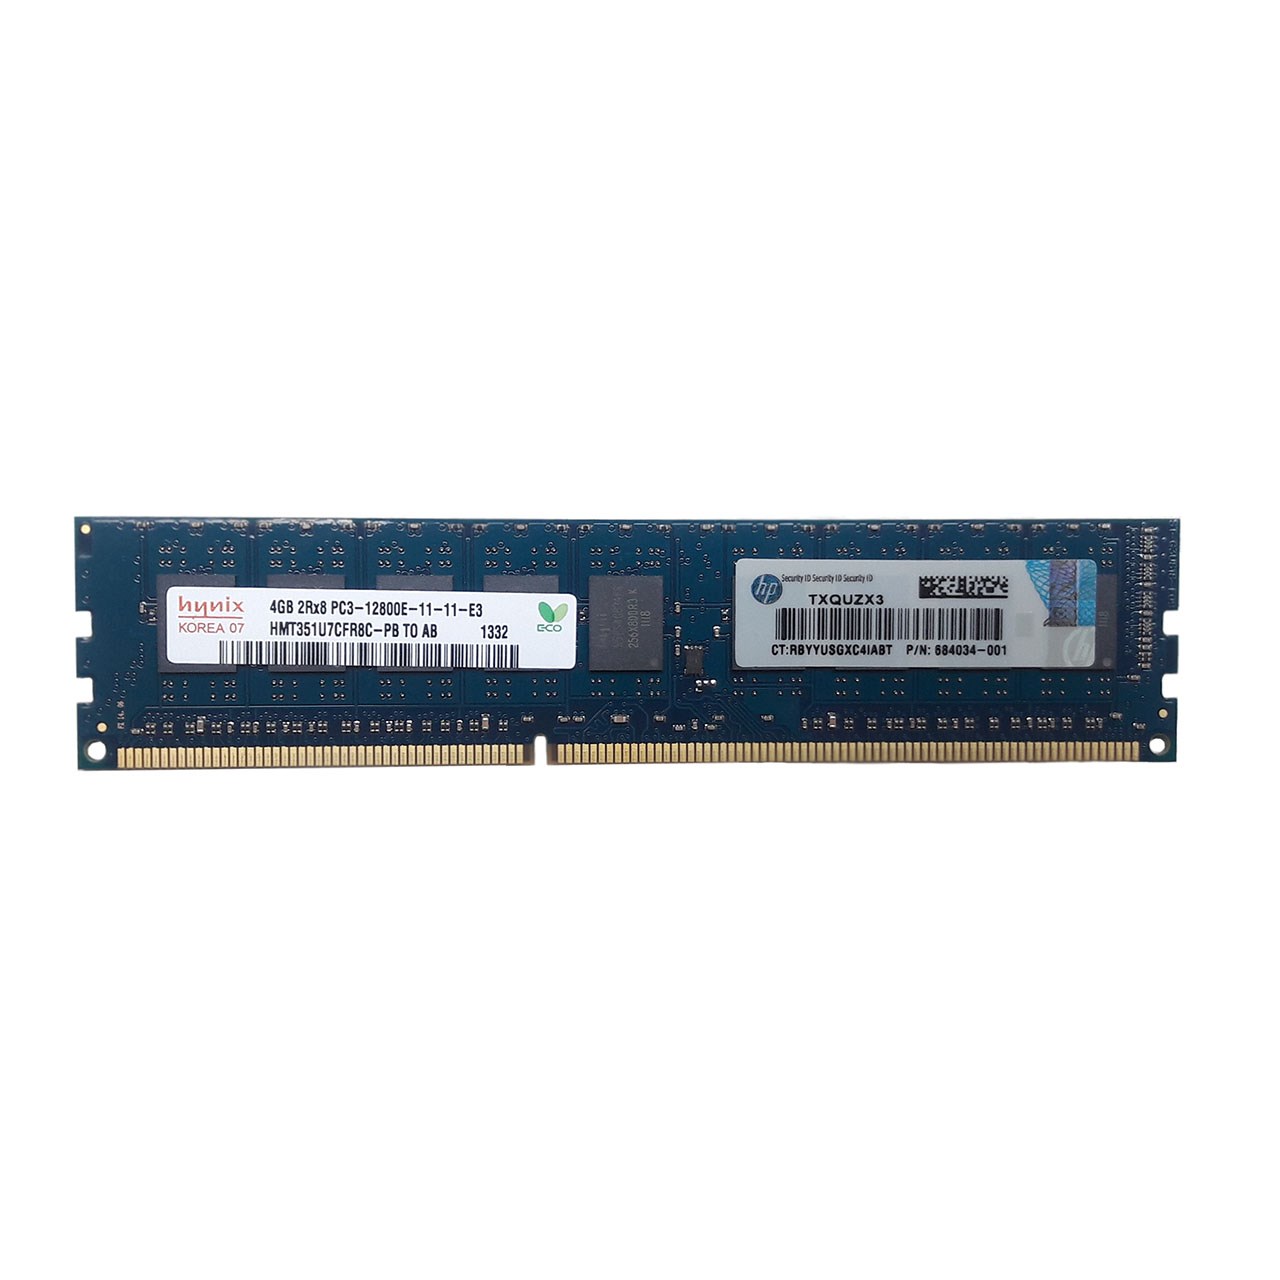 رم دسکتاپ DDR3 دو کاناله 1600 مگاهرتز ECC اچ پی مدل PC3-12800 ظرفیت 4 گیگابایت